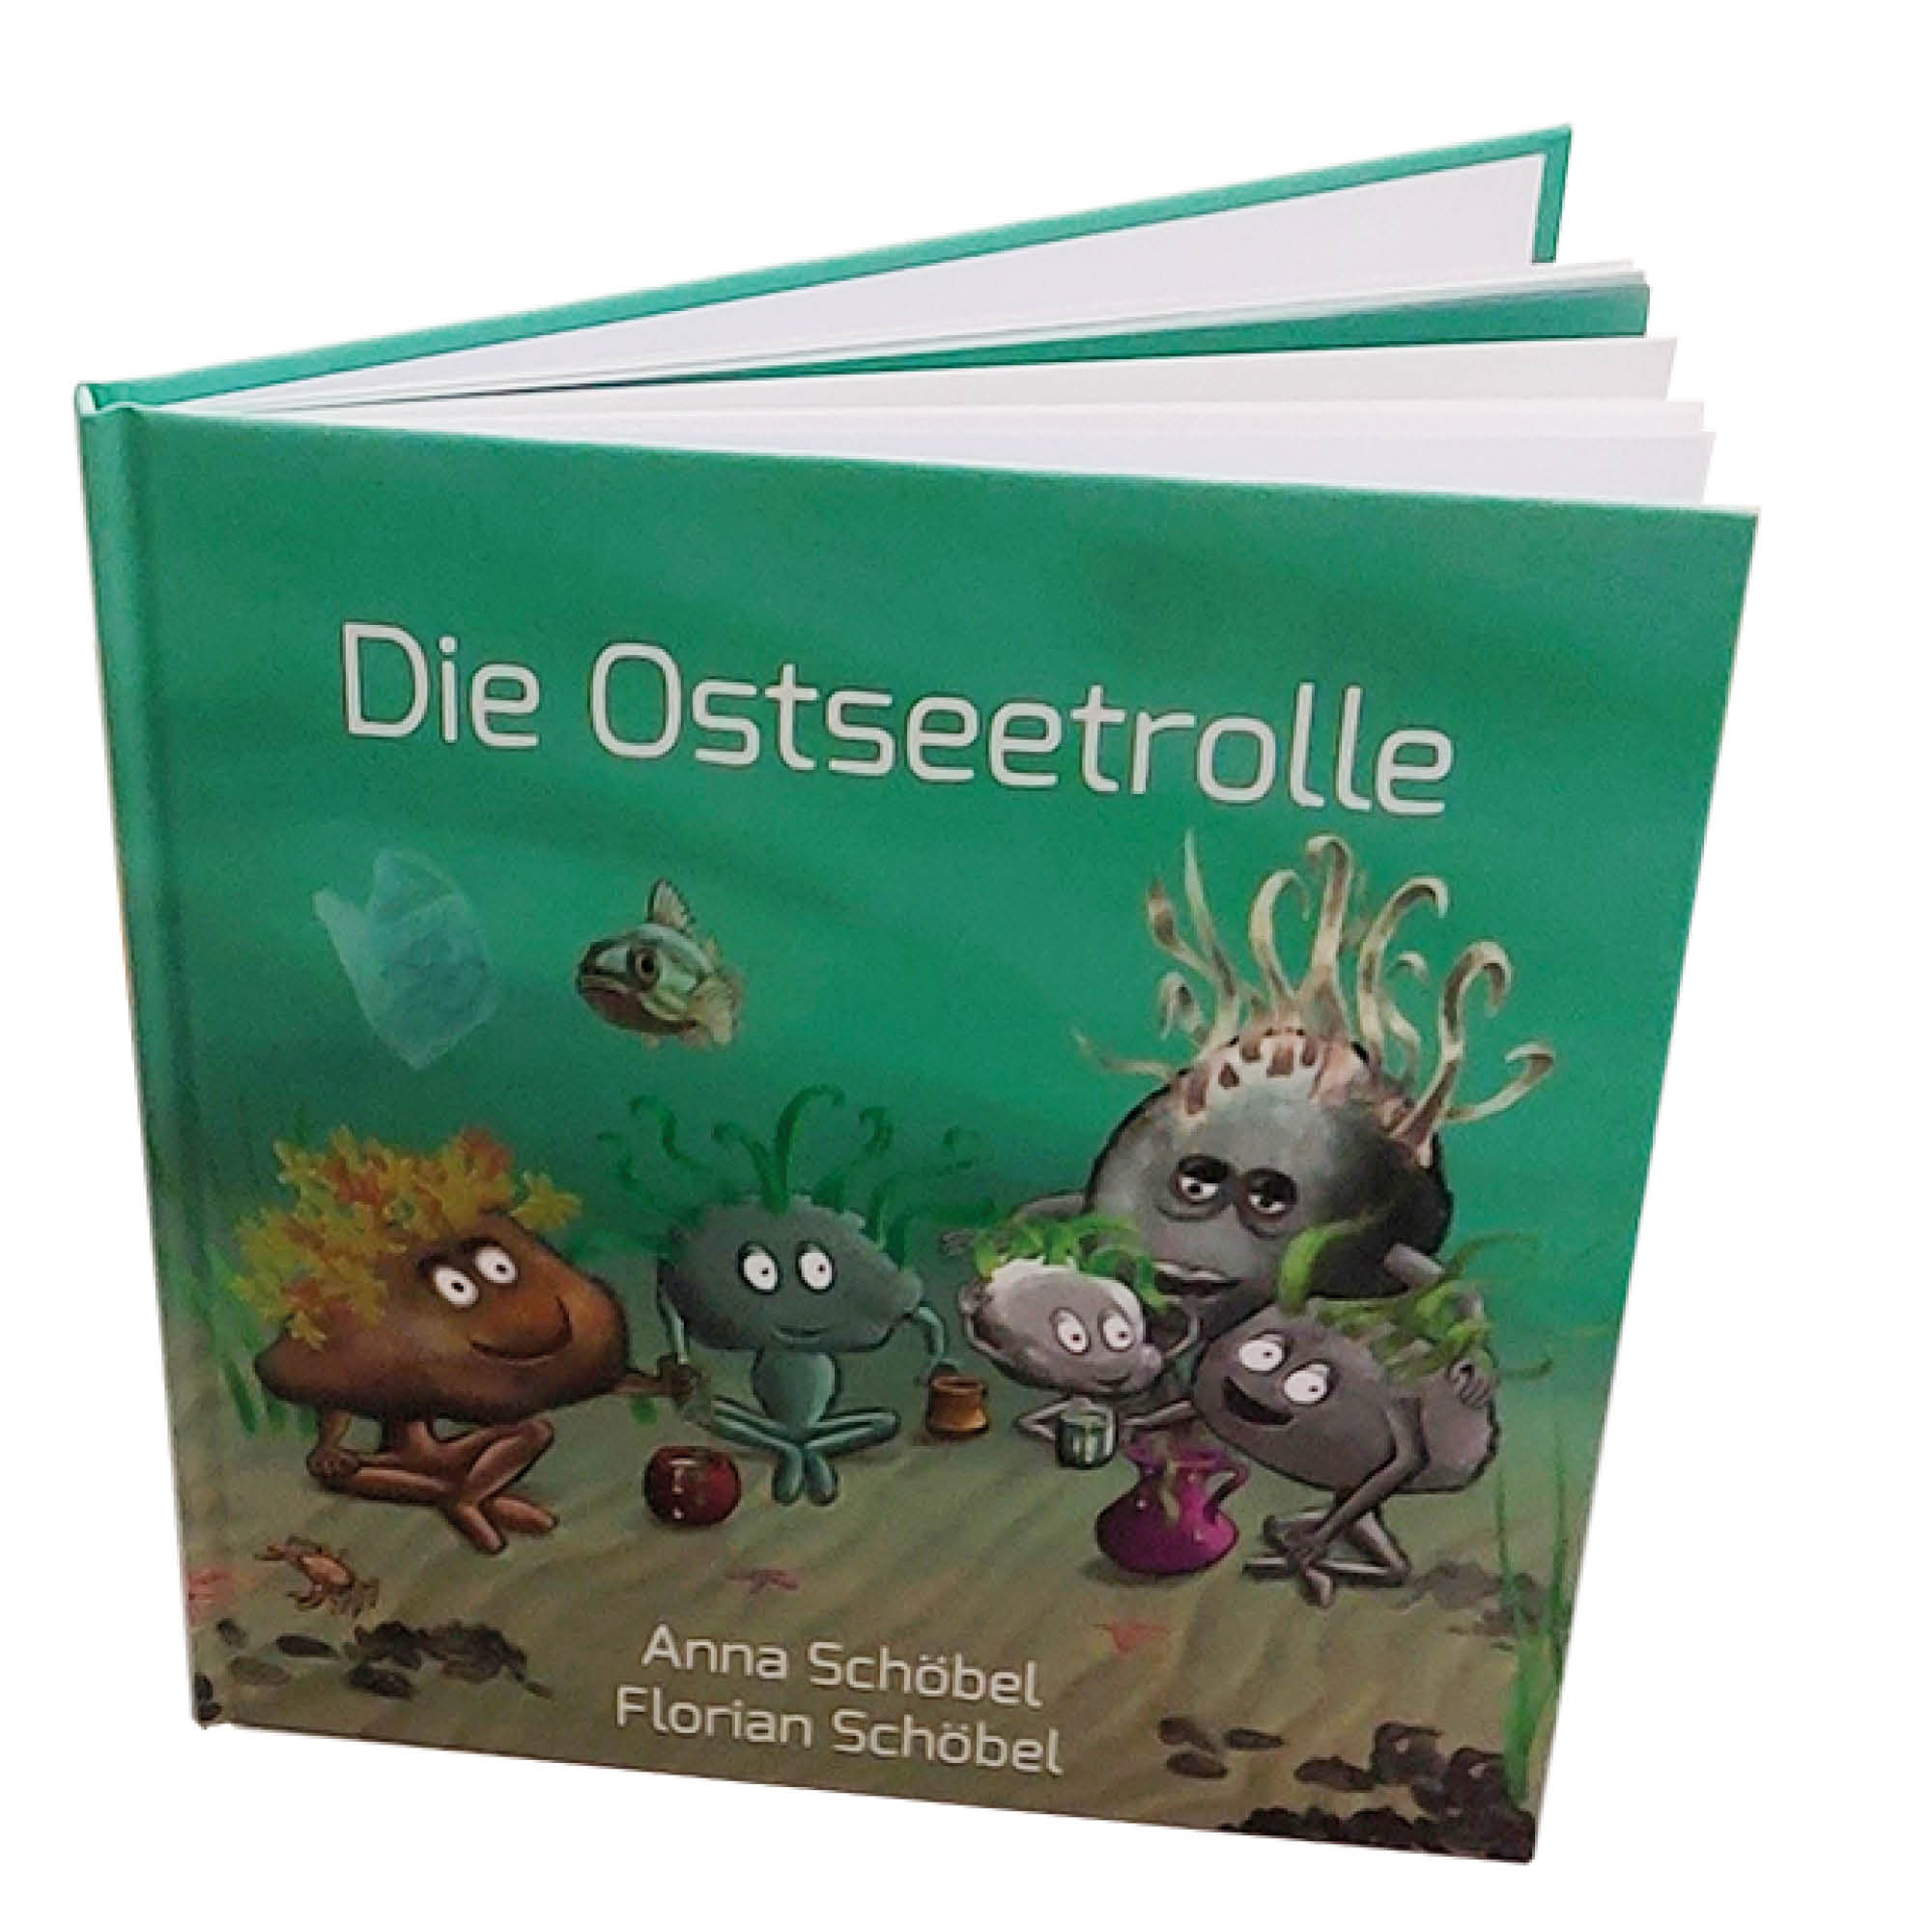 Kinderbuch "Die Ostseetrolle"